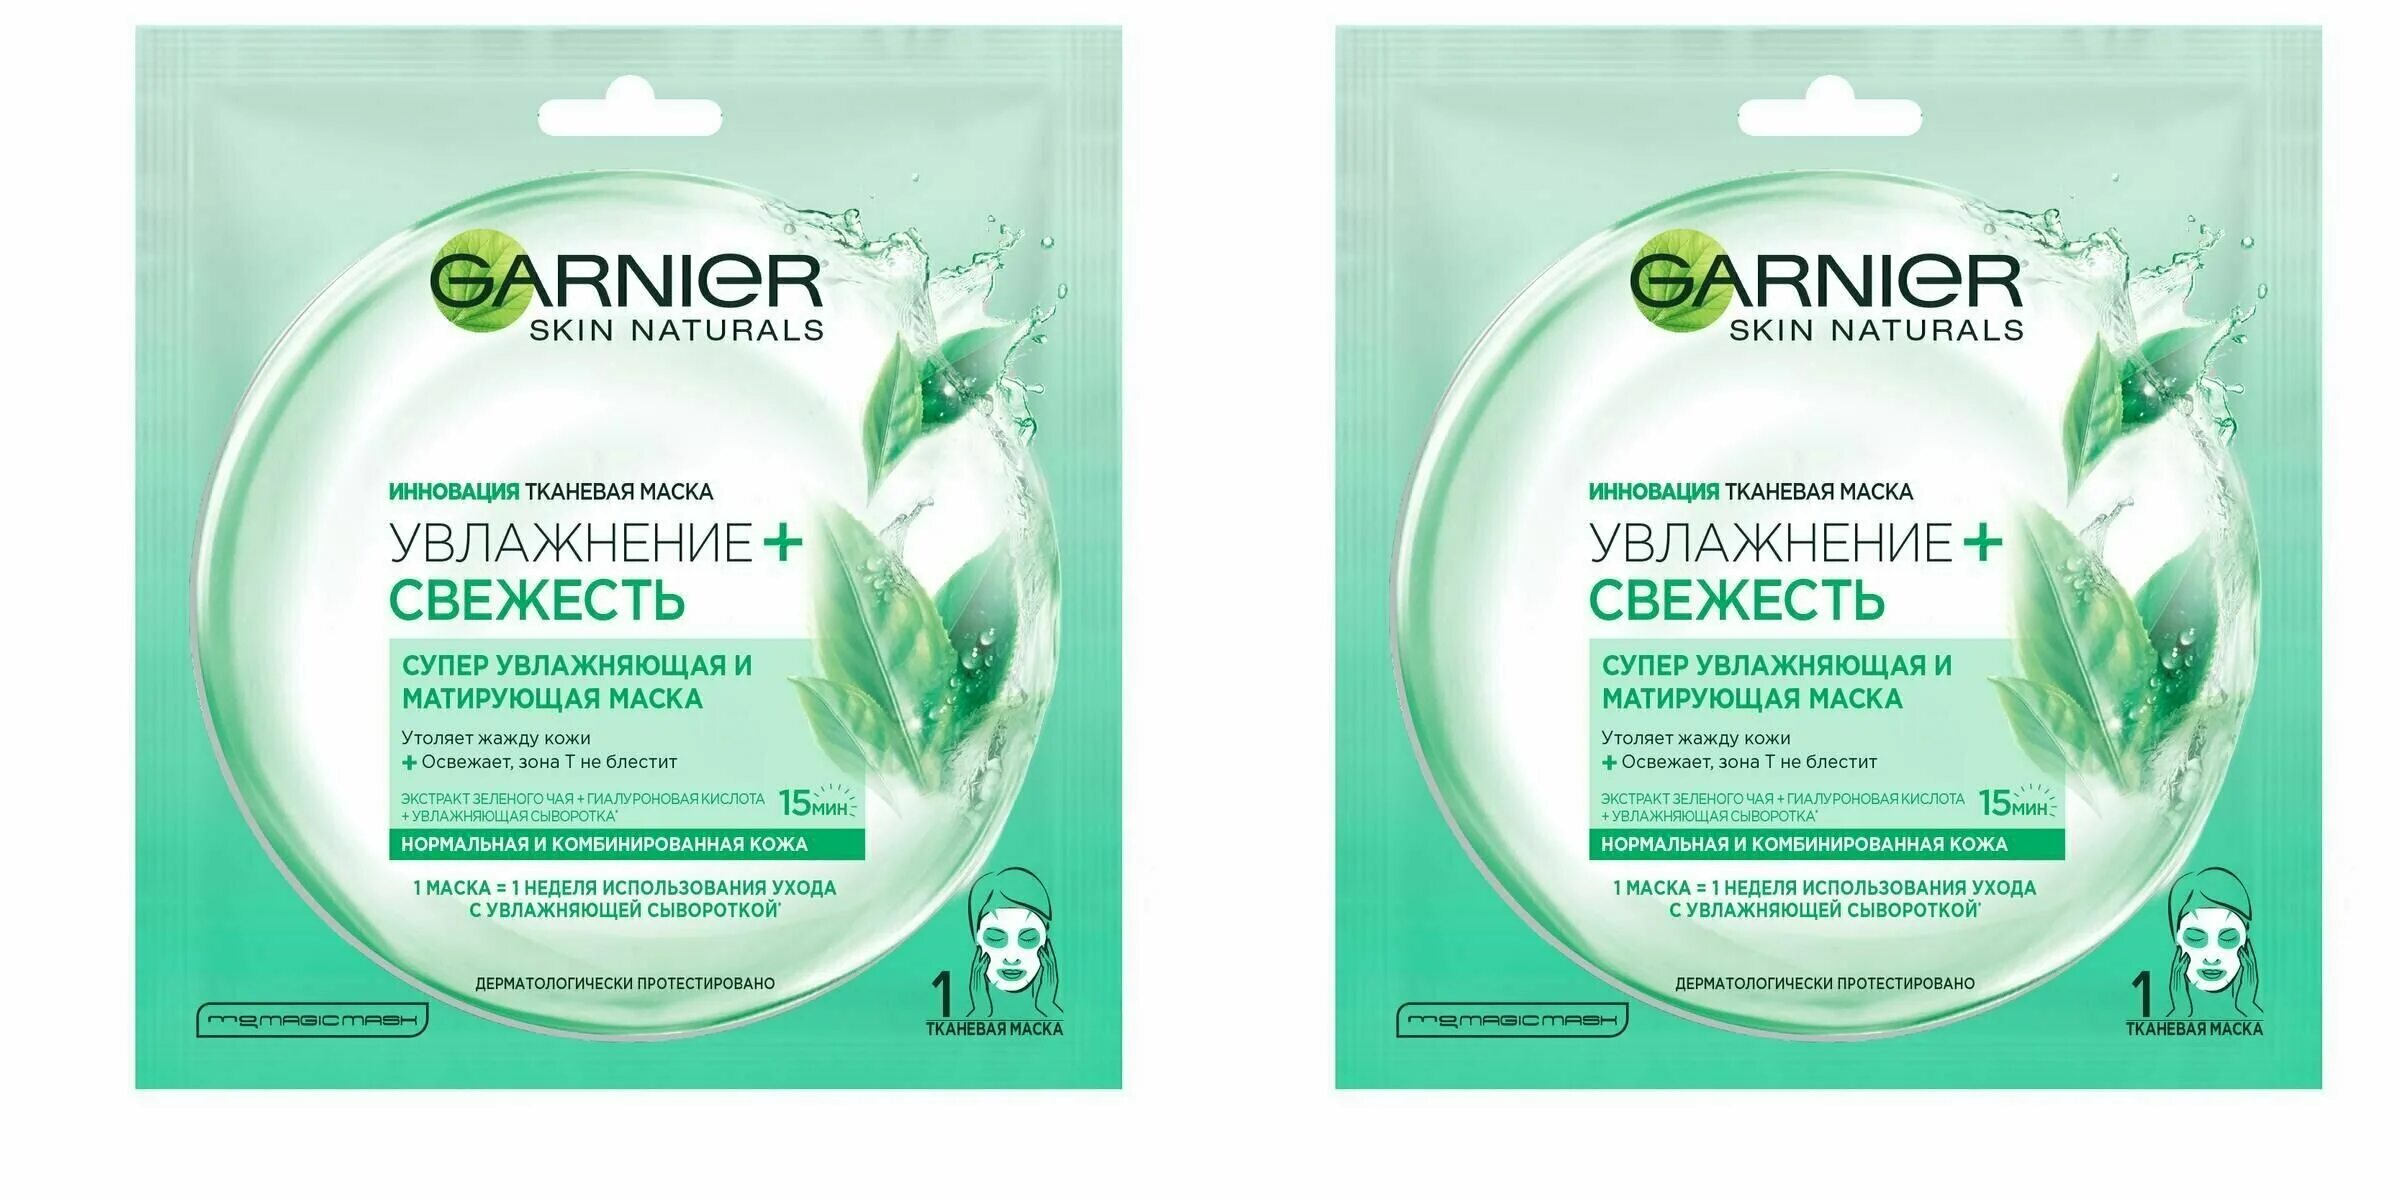 Гарньер маска тканевая свежесть для нормальной комбинированной. Garnier маска увлажнение+свежесть 32г. Garnier Skin naturals маска для лица ткан алоэ 32г. Garnier Skin naturals маска д/лиц ткан алоэ 32г(лореаль):20.